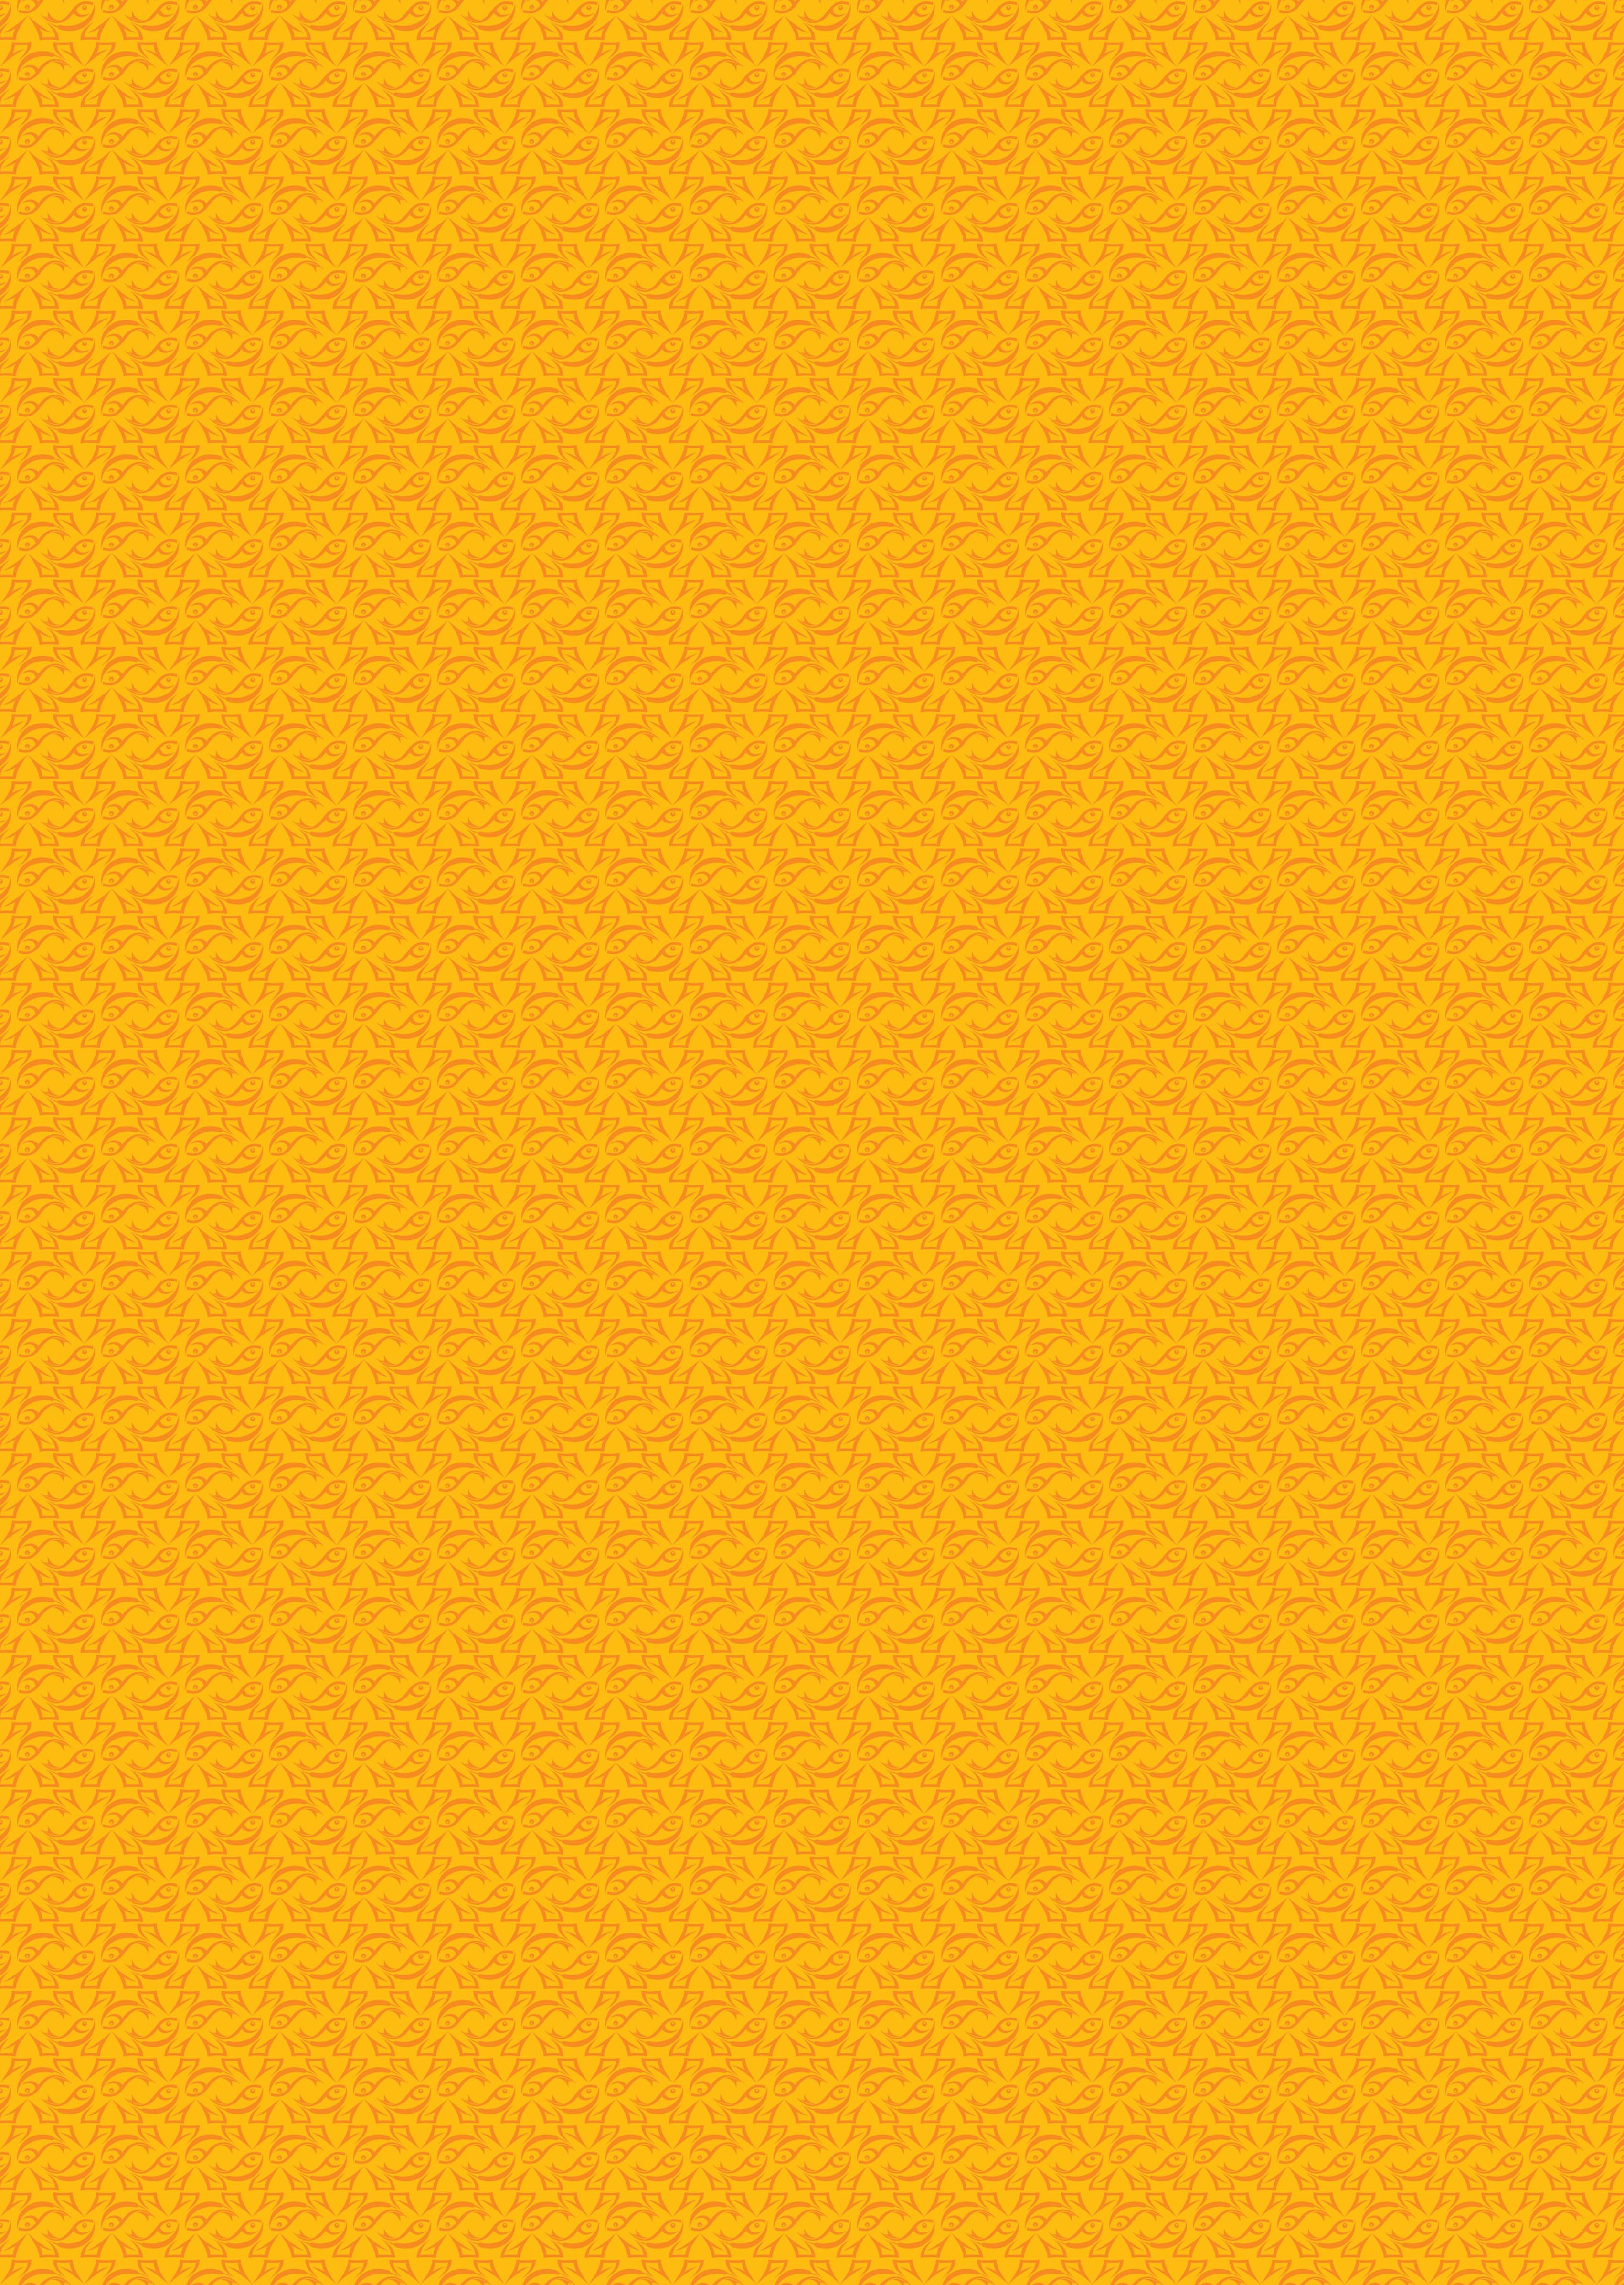 Background Warna Kuning Muda  Aires Gambar